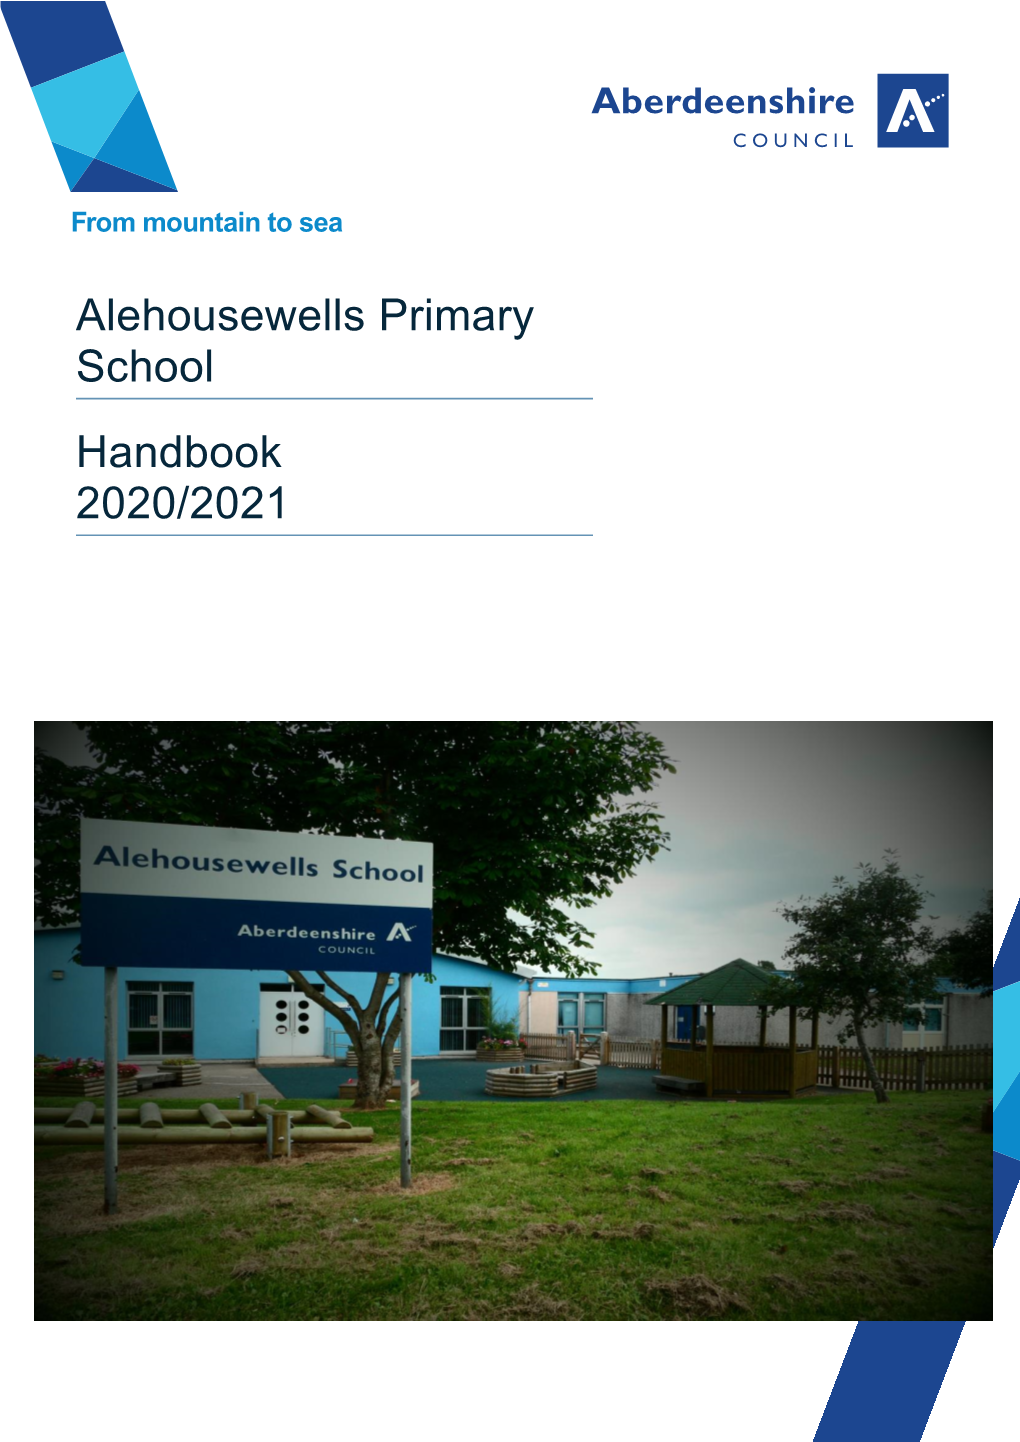 Alehousewells Primary School Handbook 2020/2021